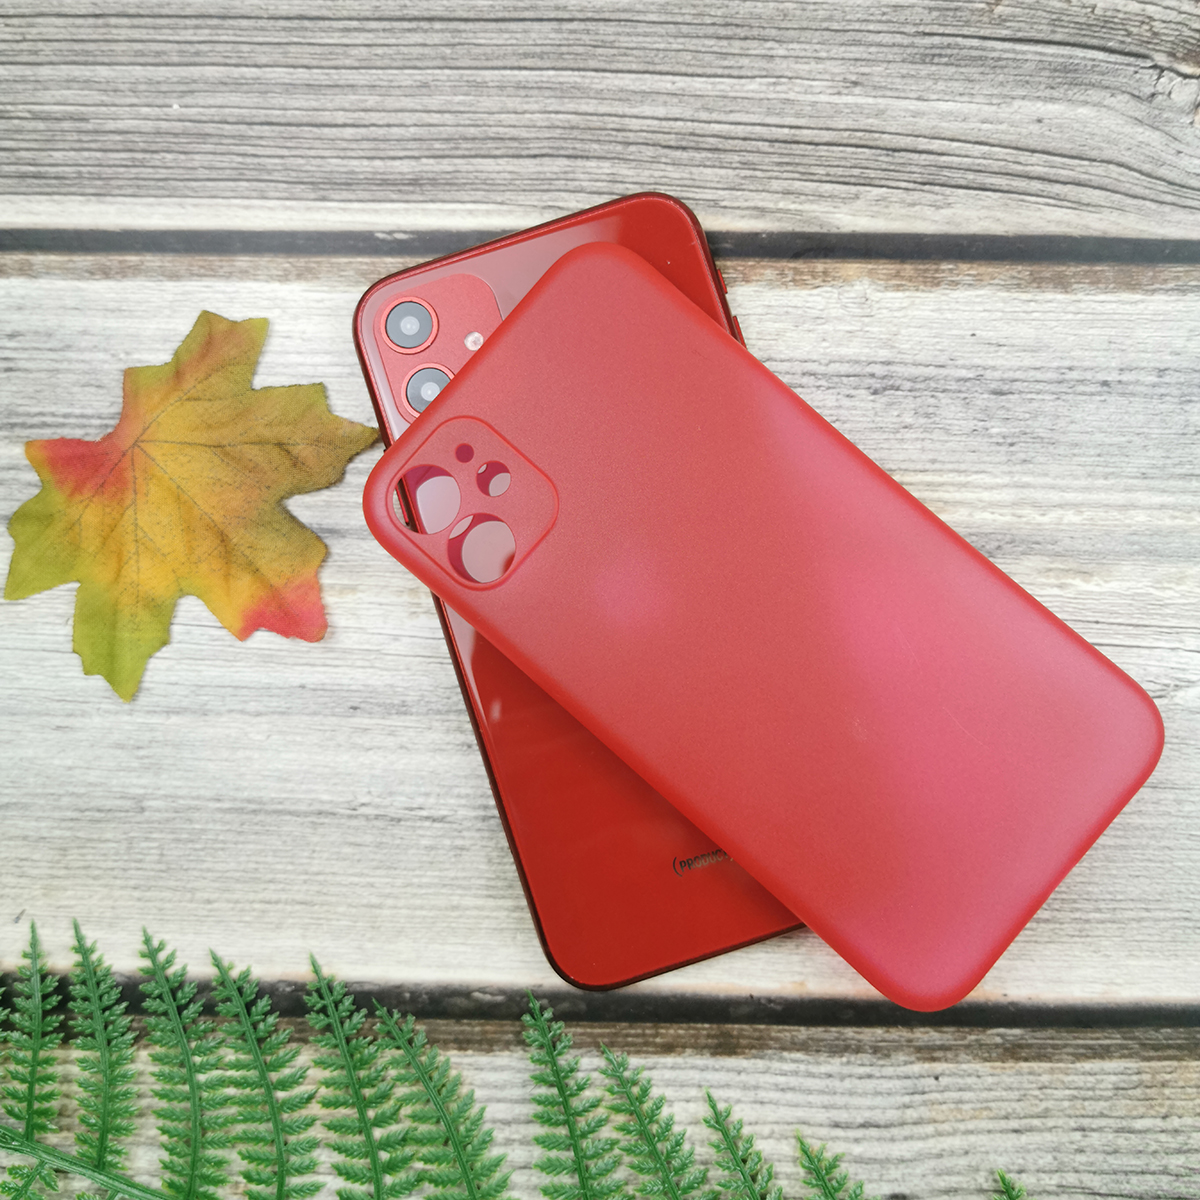 313102 รุ่น iPhone XS MAX สีแดง กึ่งโปร่ง
